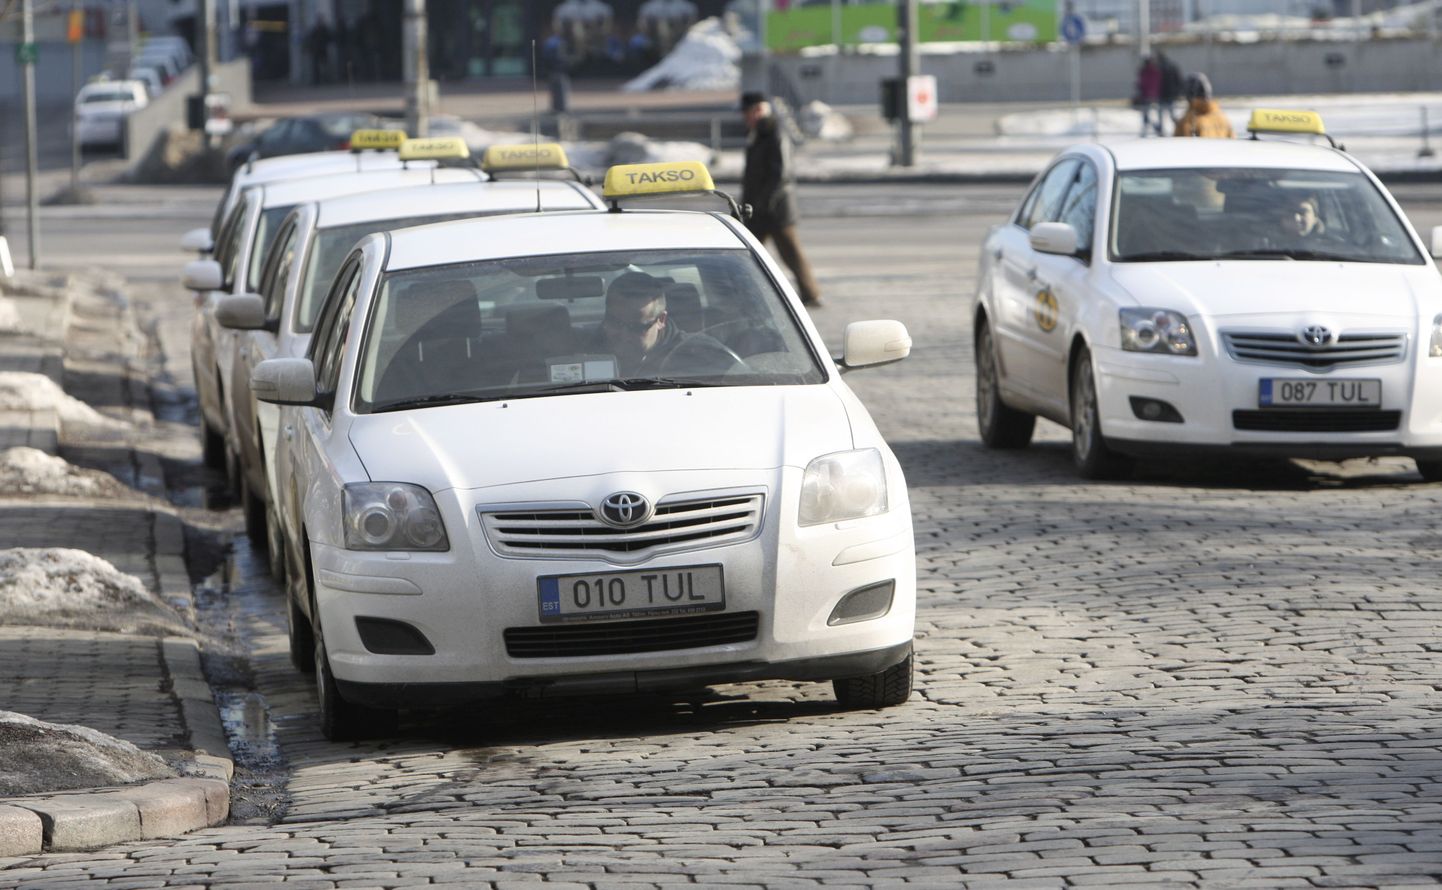 Kas tulevikus on Eesti taksode numbrimärgid hoopis kollased?